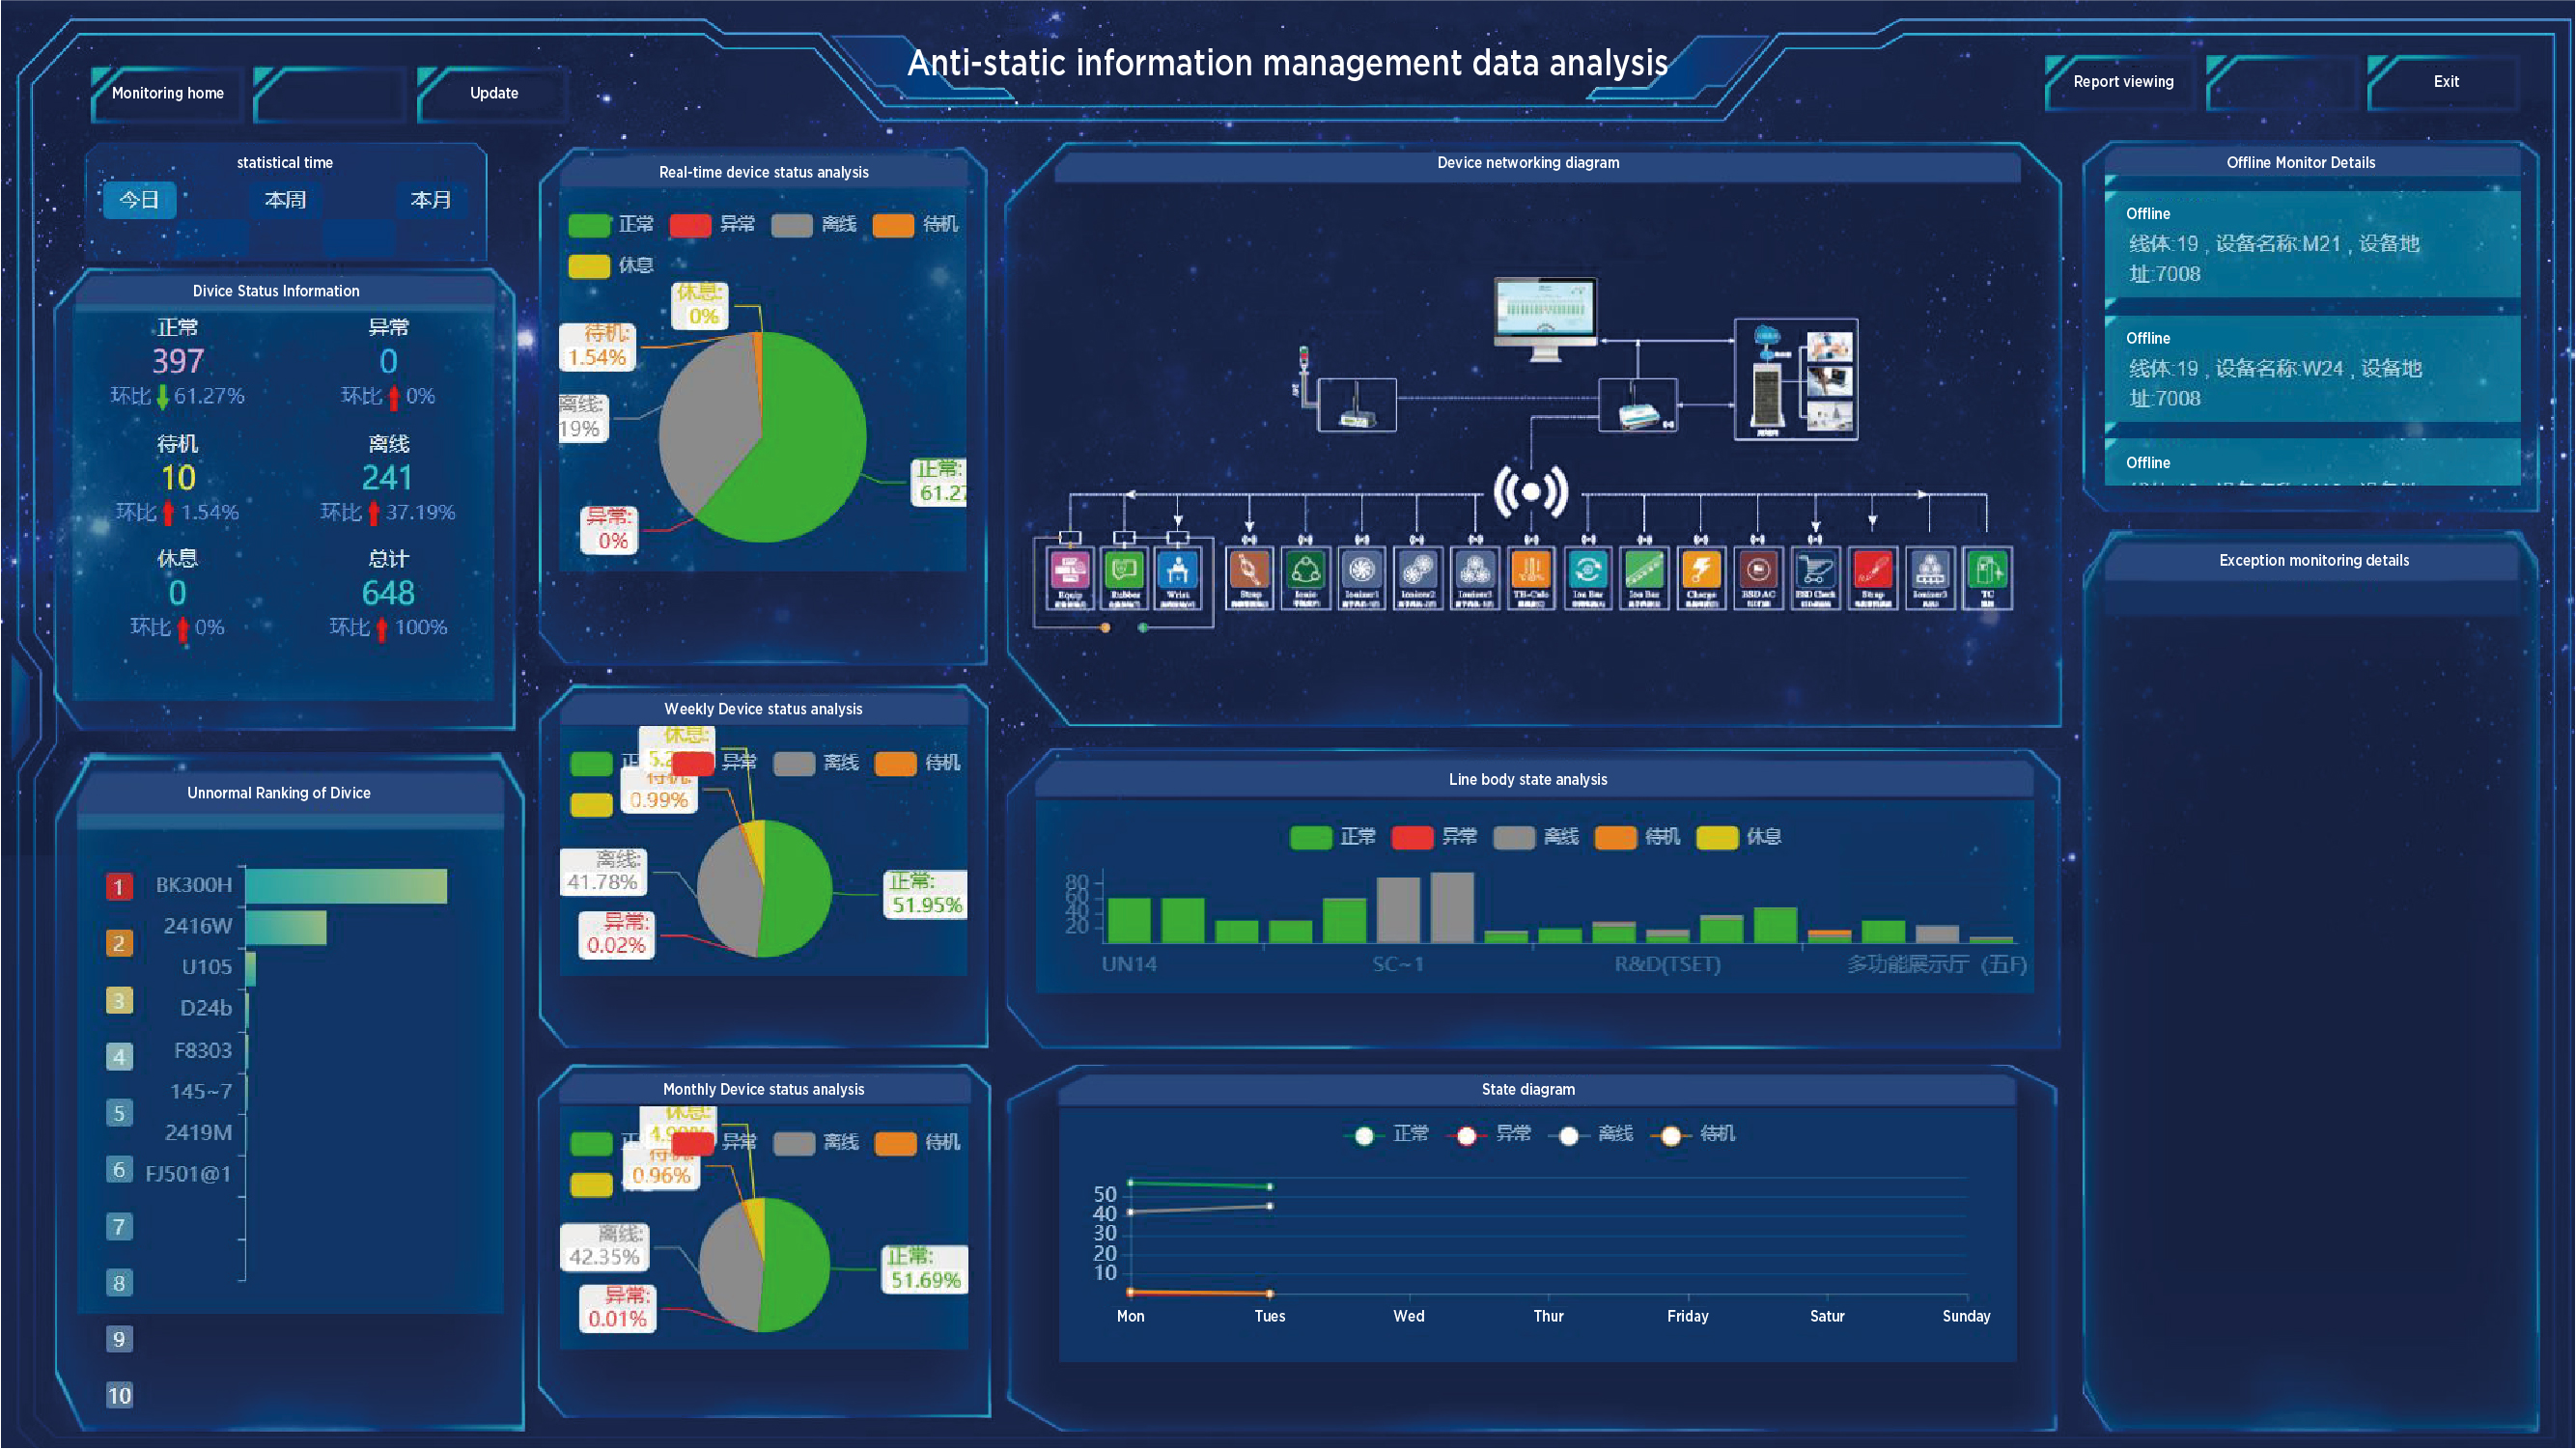 Information management data